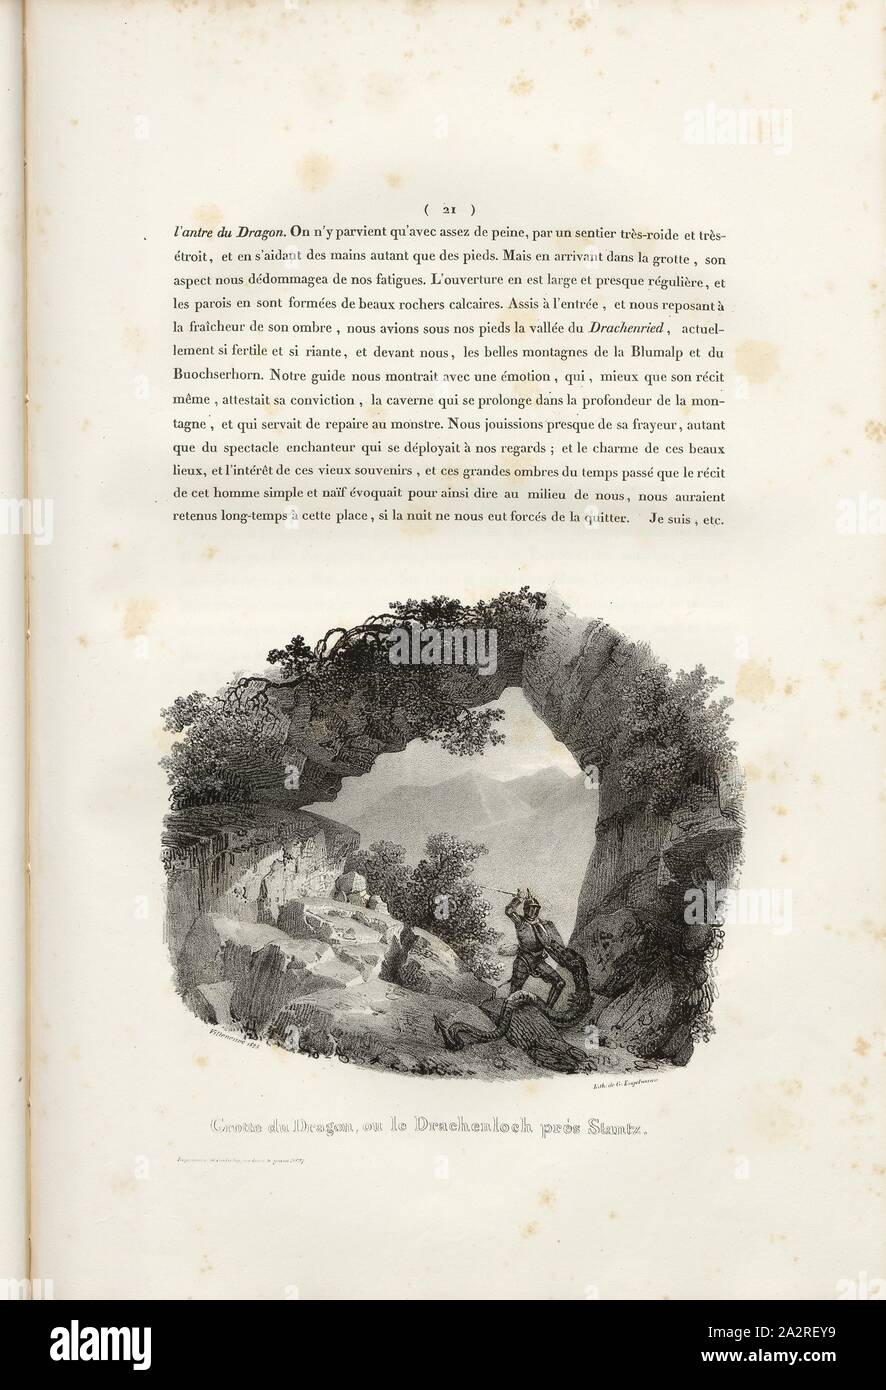 Dragon's Cave, or the Drachenloch near Stantz, Dragon's Hole near Stans, signed: Villeneuve, G. Engelmann, lithograph, plate 2, p. 21 (vol. 2, part 3), Villeneuve, M.; Engelmann, Godefroy (lith.), 1825, Hilaire Léon Sazerac, Godefroy Engelmann: Lettres sur la Suisse (...). Paris: [s.n.], 1823-1832 Stock Photo